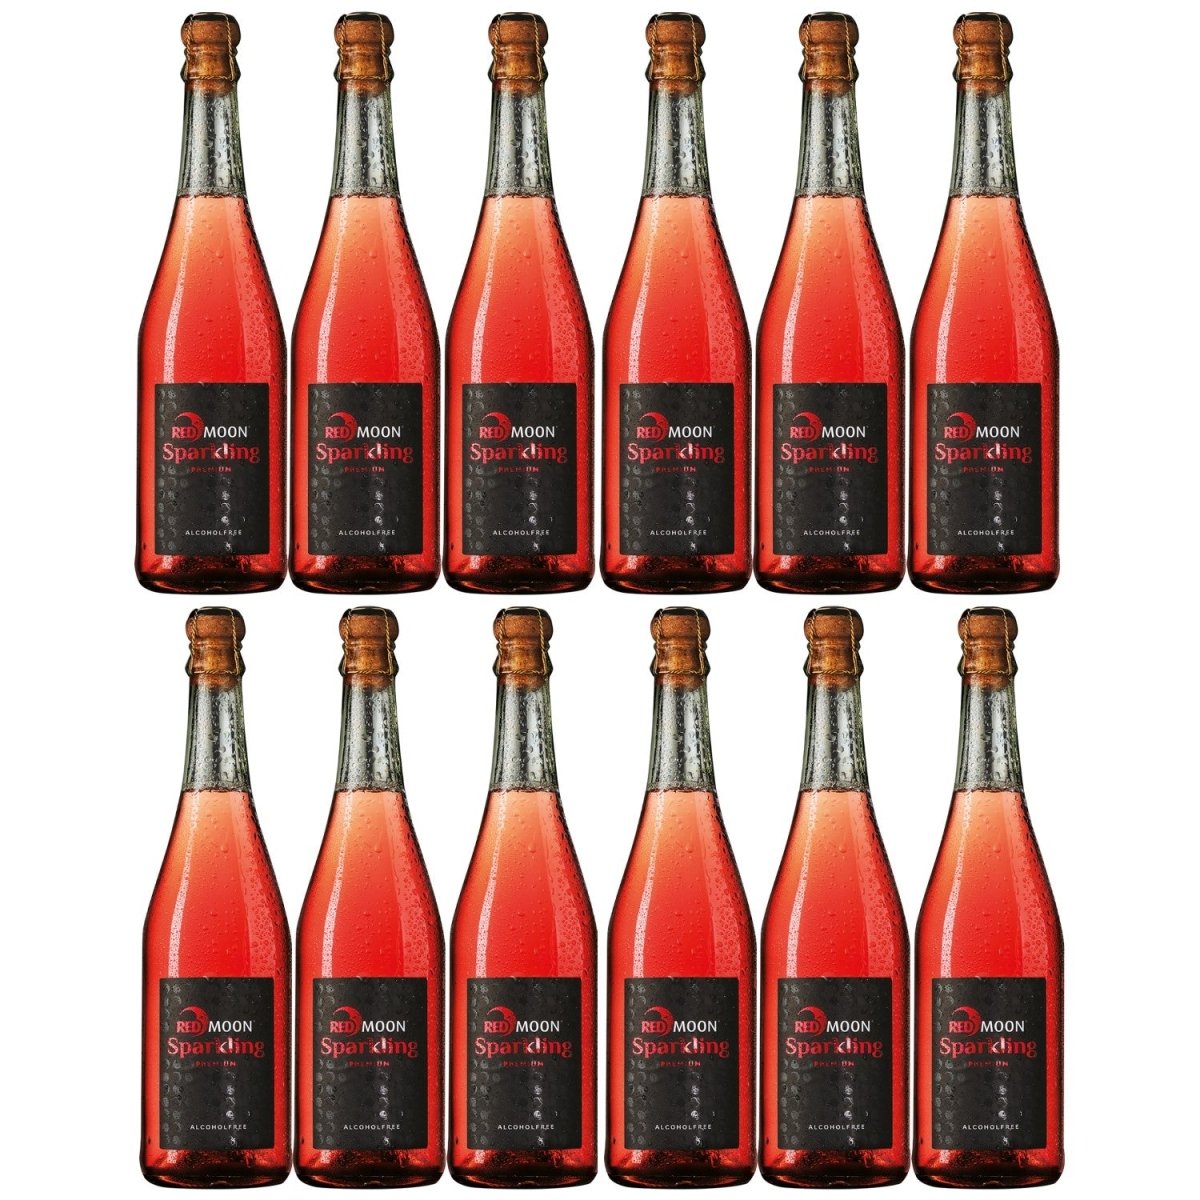 Red Moon Sparkling alkoholfreier Premium Apfel-Schaumwein 100% natürlich & alkoholfrei (12 x 0.75 l) - Versanel -